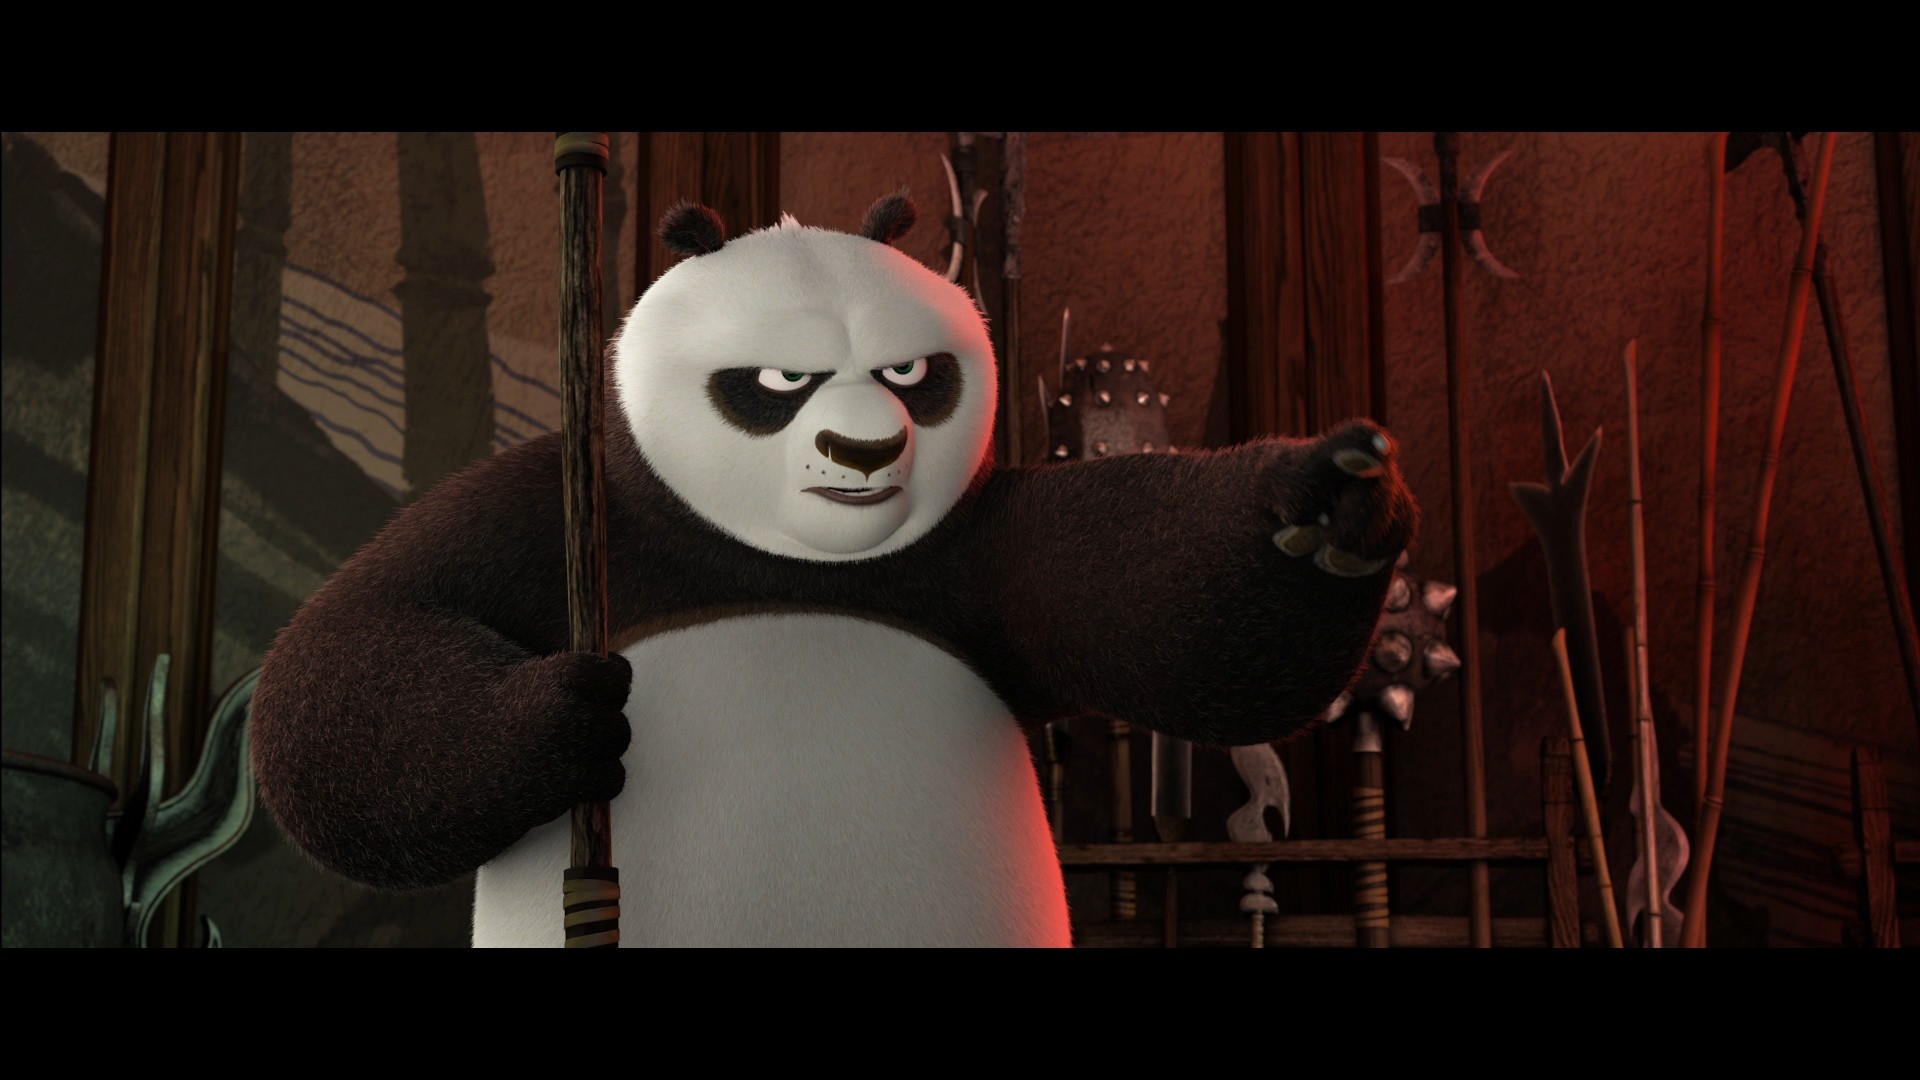 [功夫熊猫3].Kung.Fu.Panda.3.2016.HK.3D.BluRay.1080p.AVC.DTS-HD.MA.7.1-TTG   37.03G-3.jpg